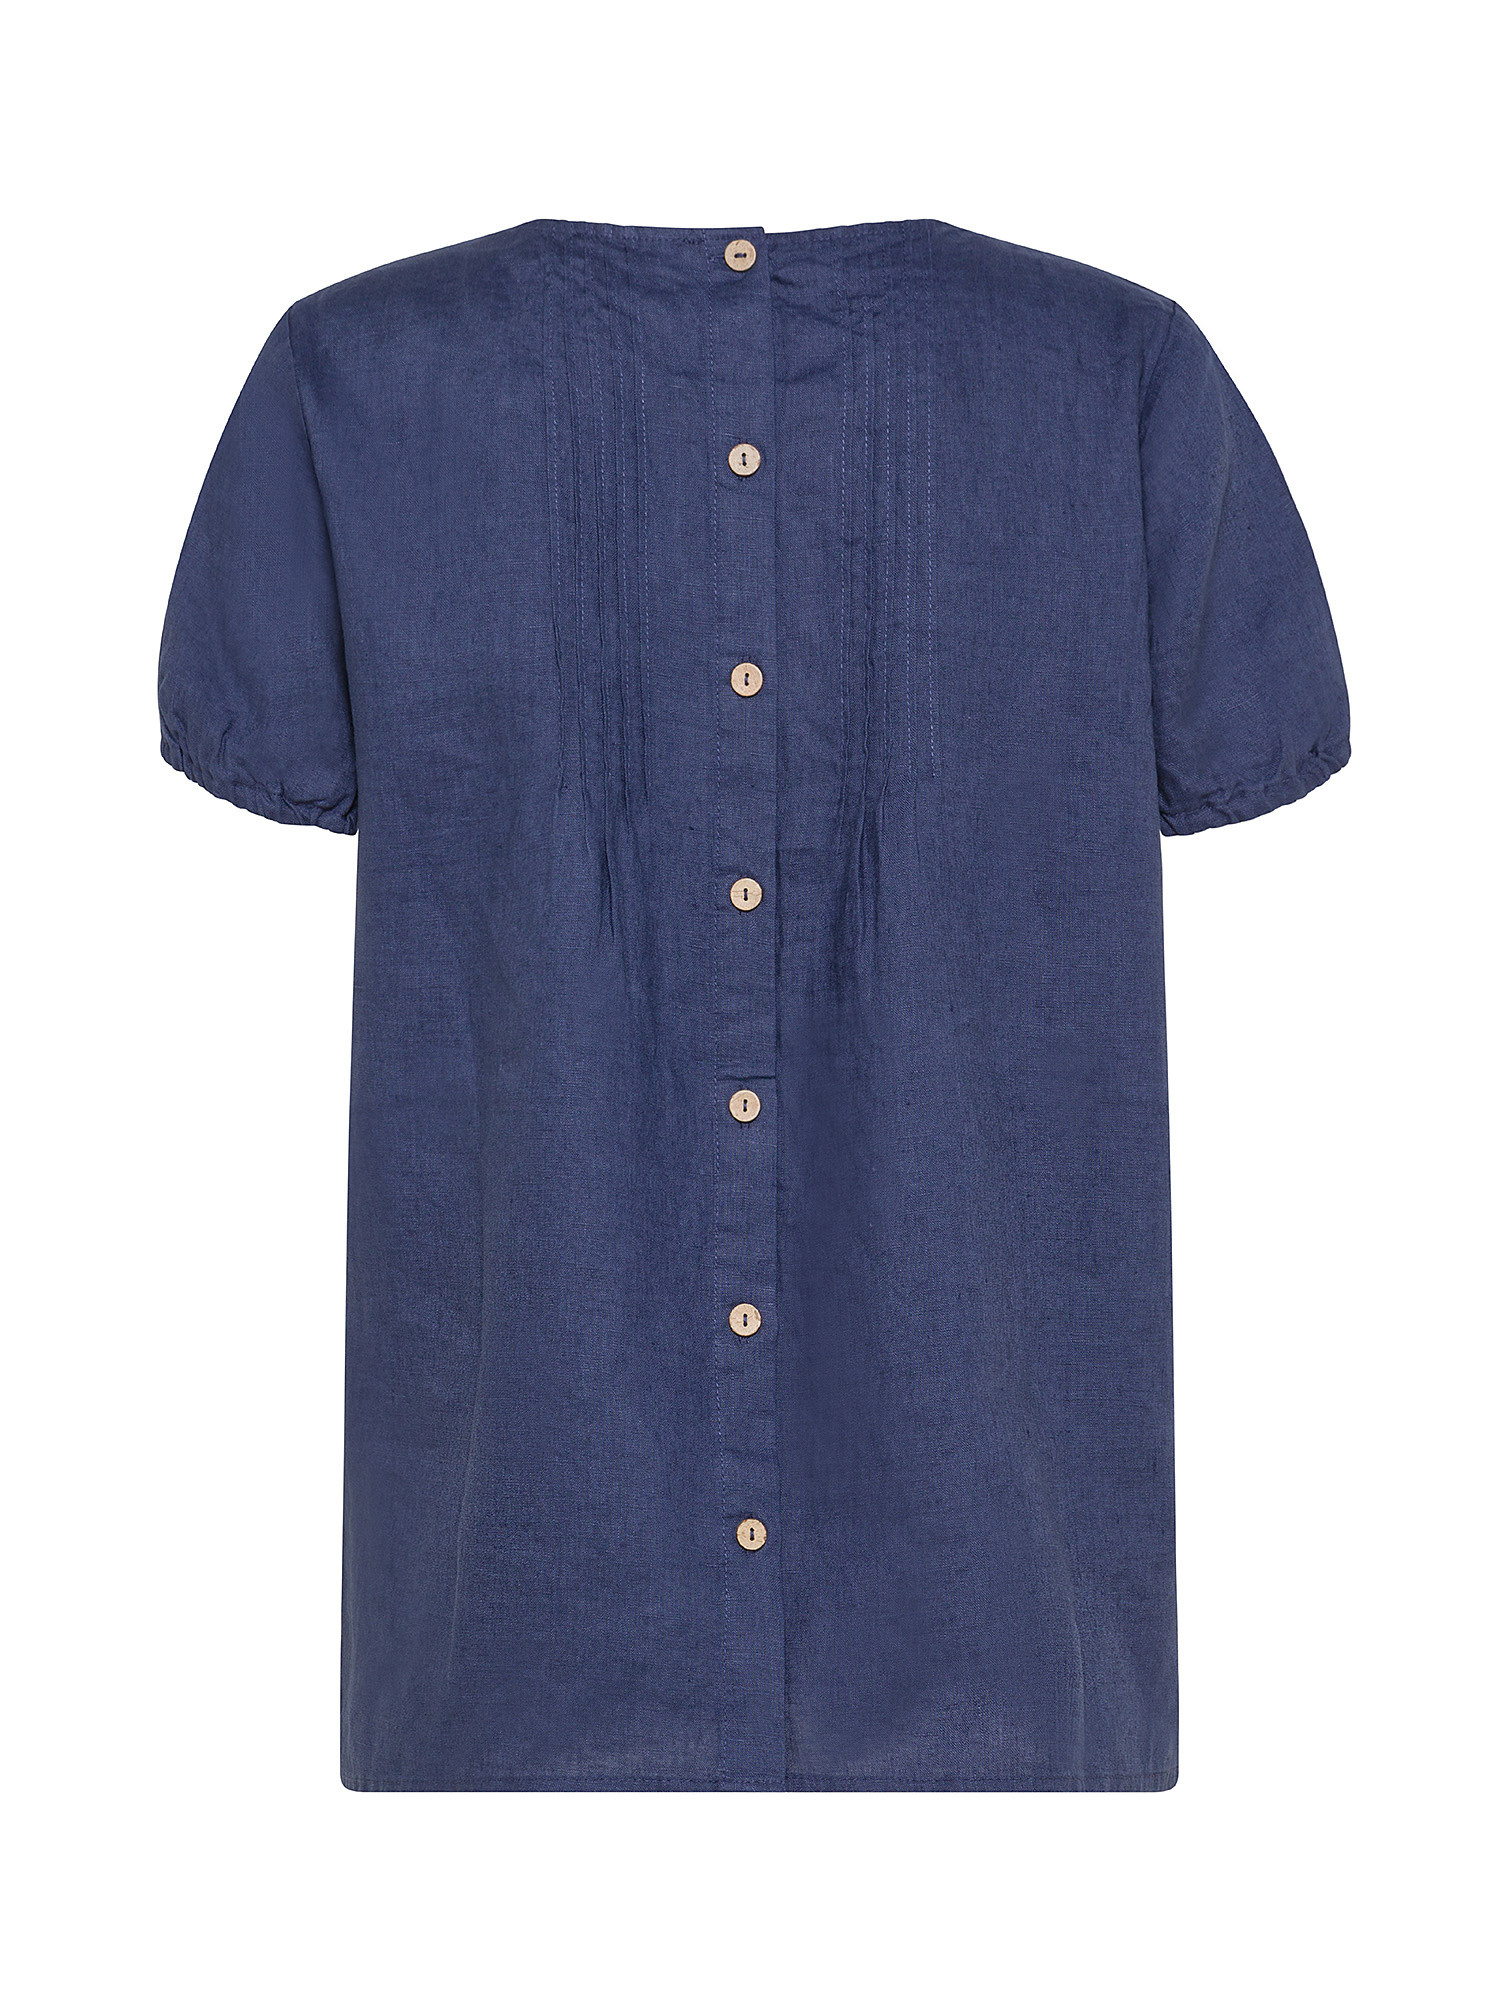 Koan - Linen blouse, Blue, large image number 1